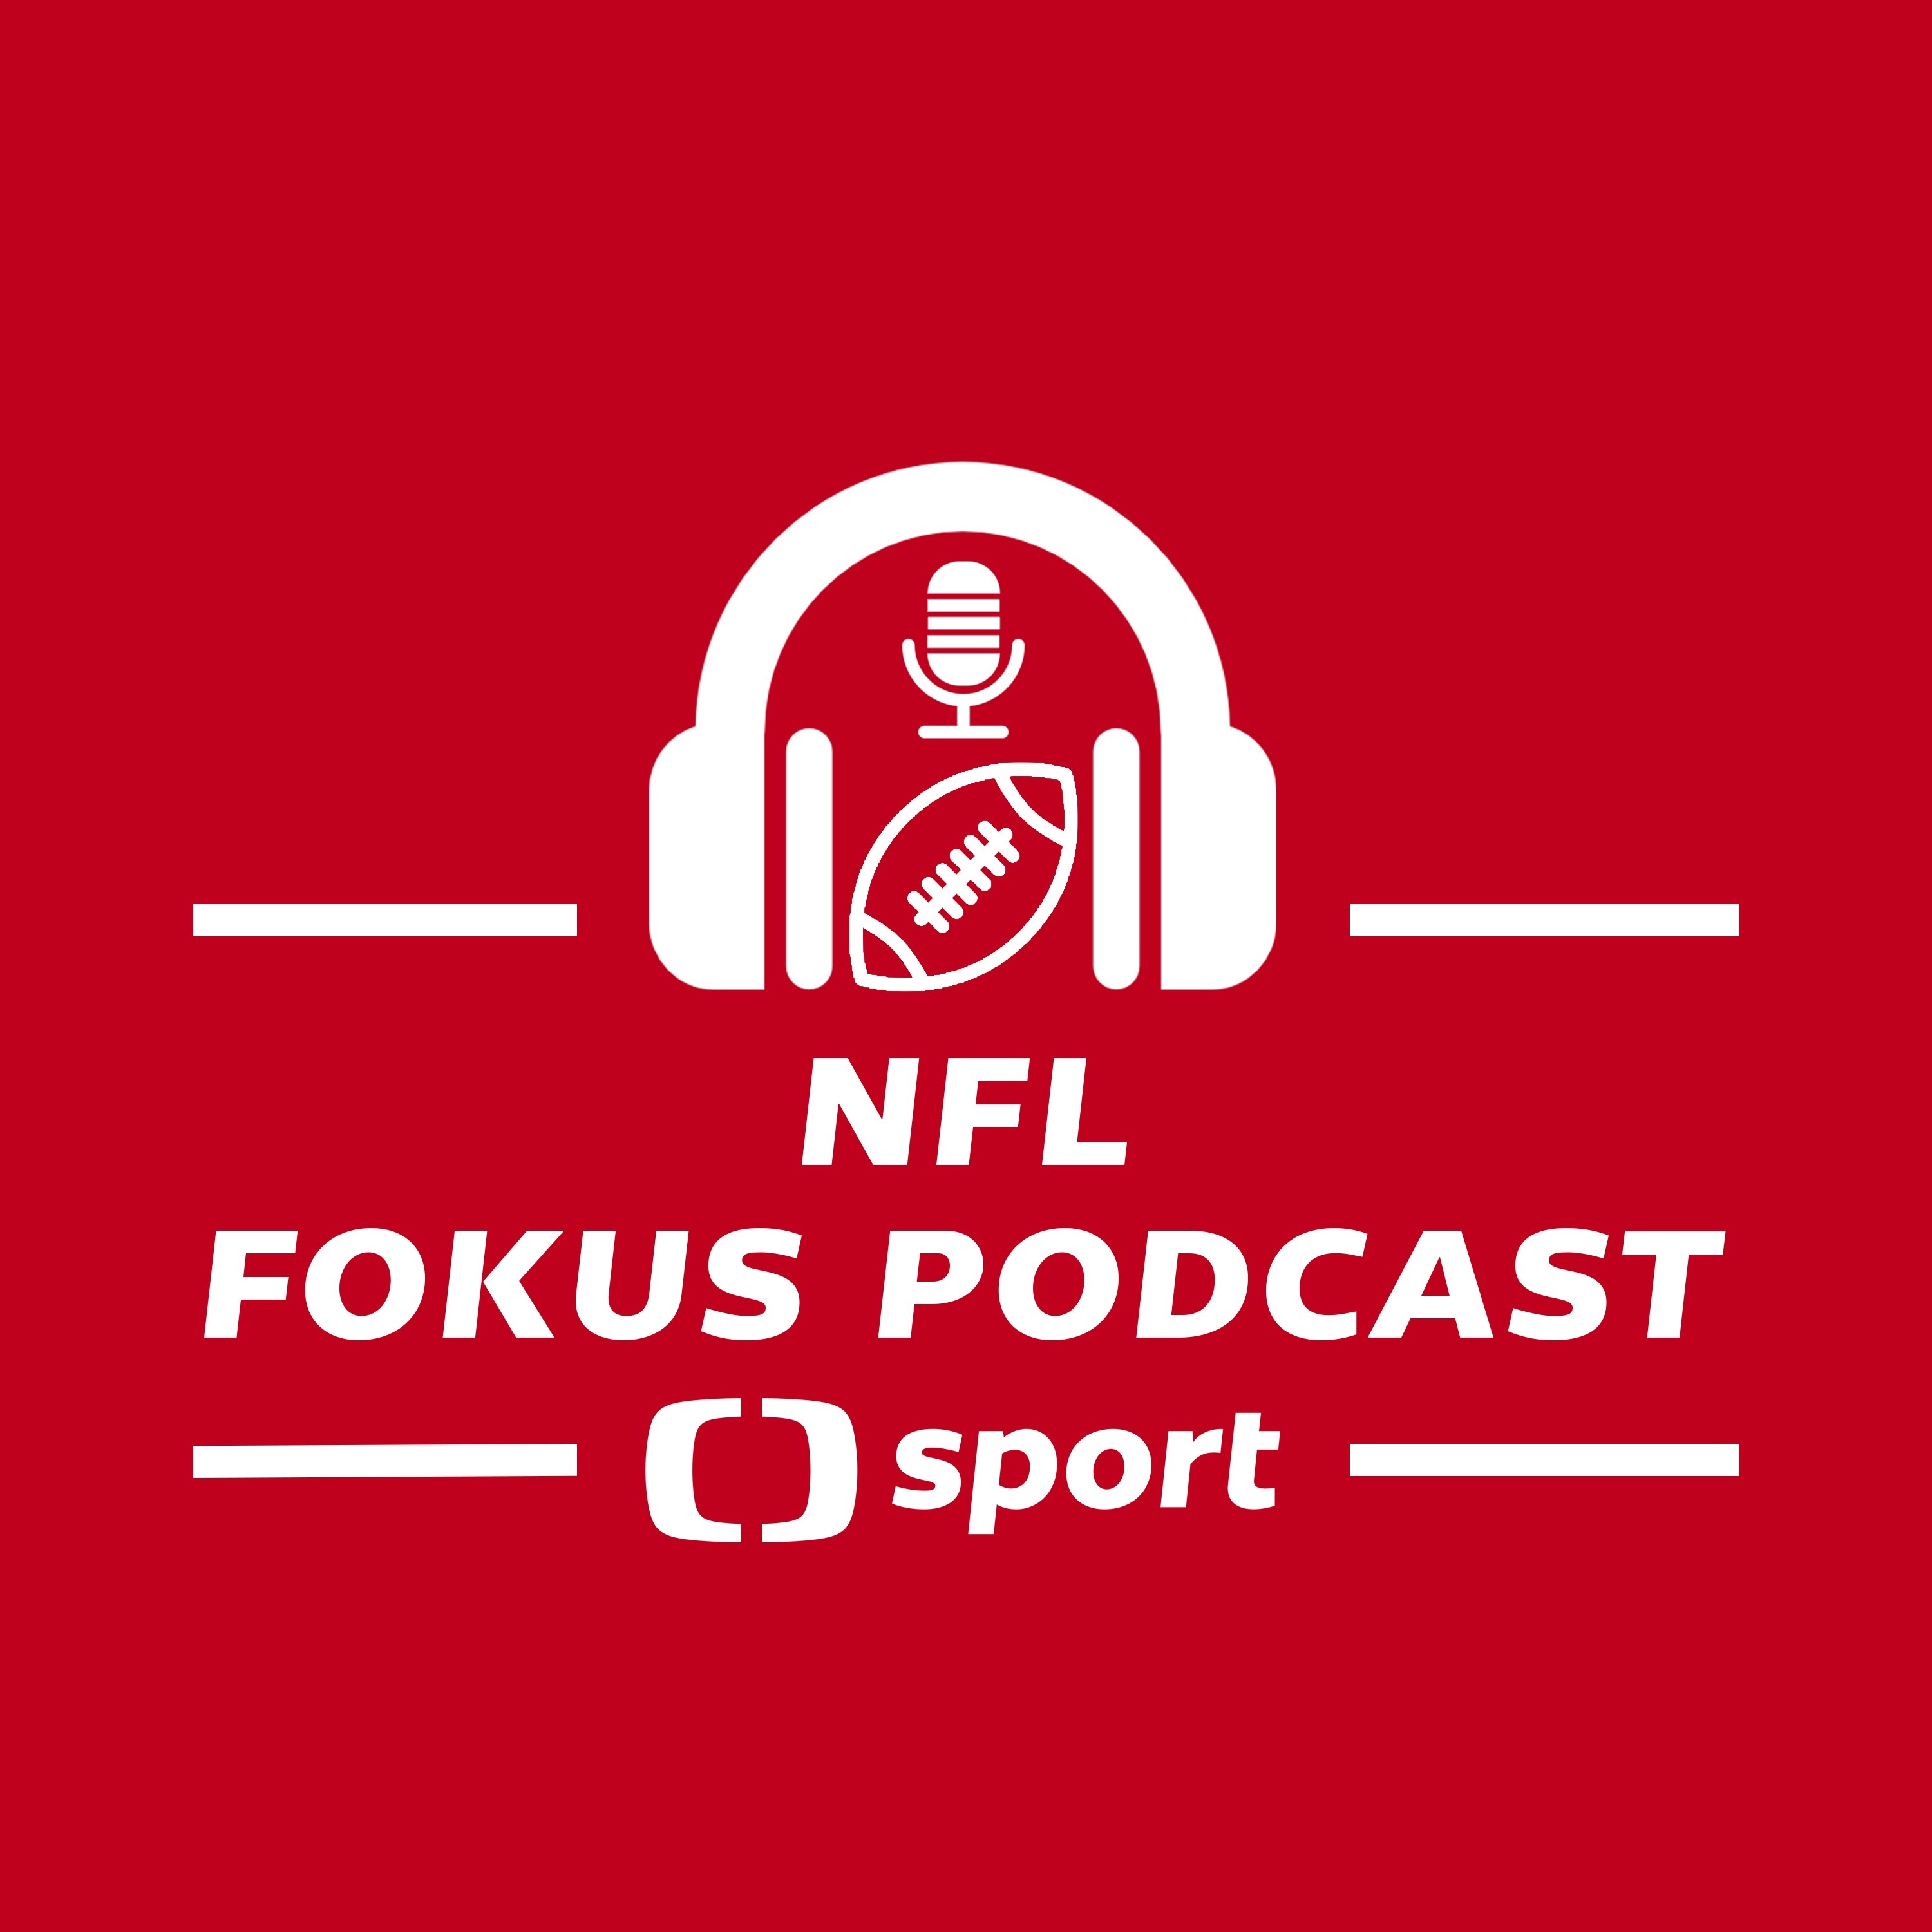 NFL fokus podcast: Co lize přináší mánie kolem Gardnera Minshewa a jak se daří mladým quarterbackům?